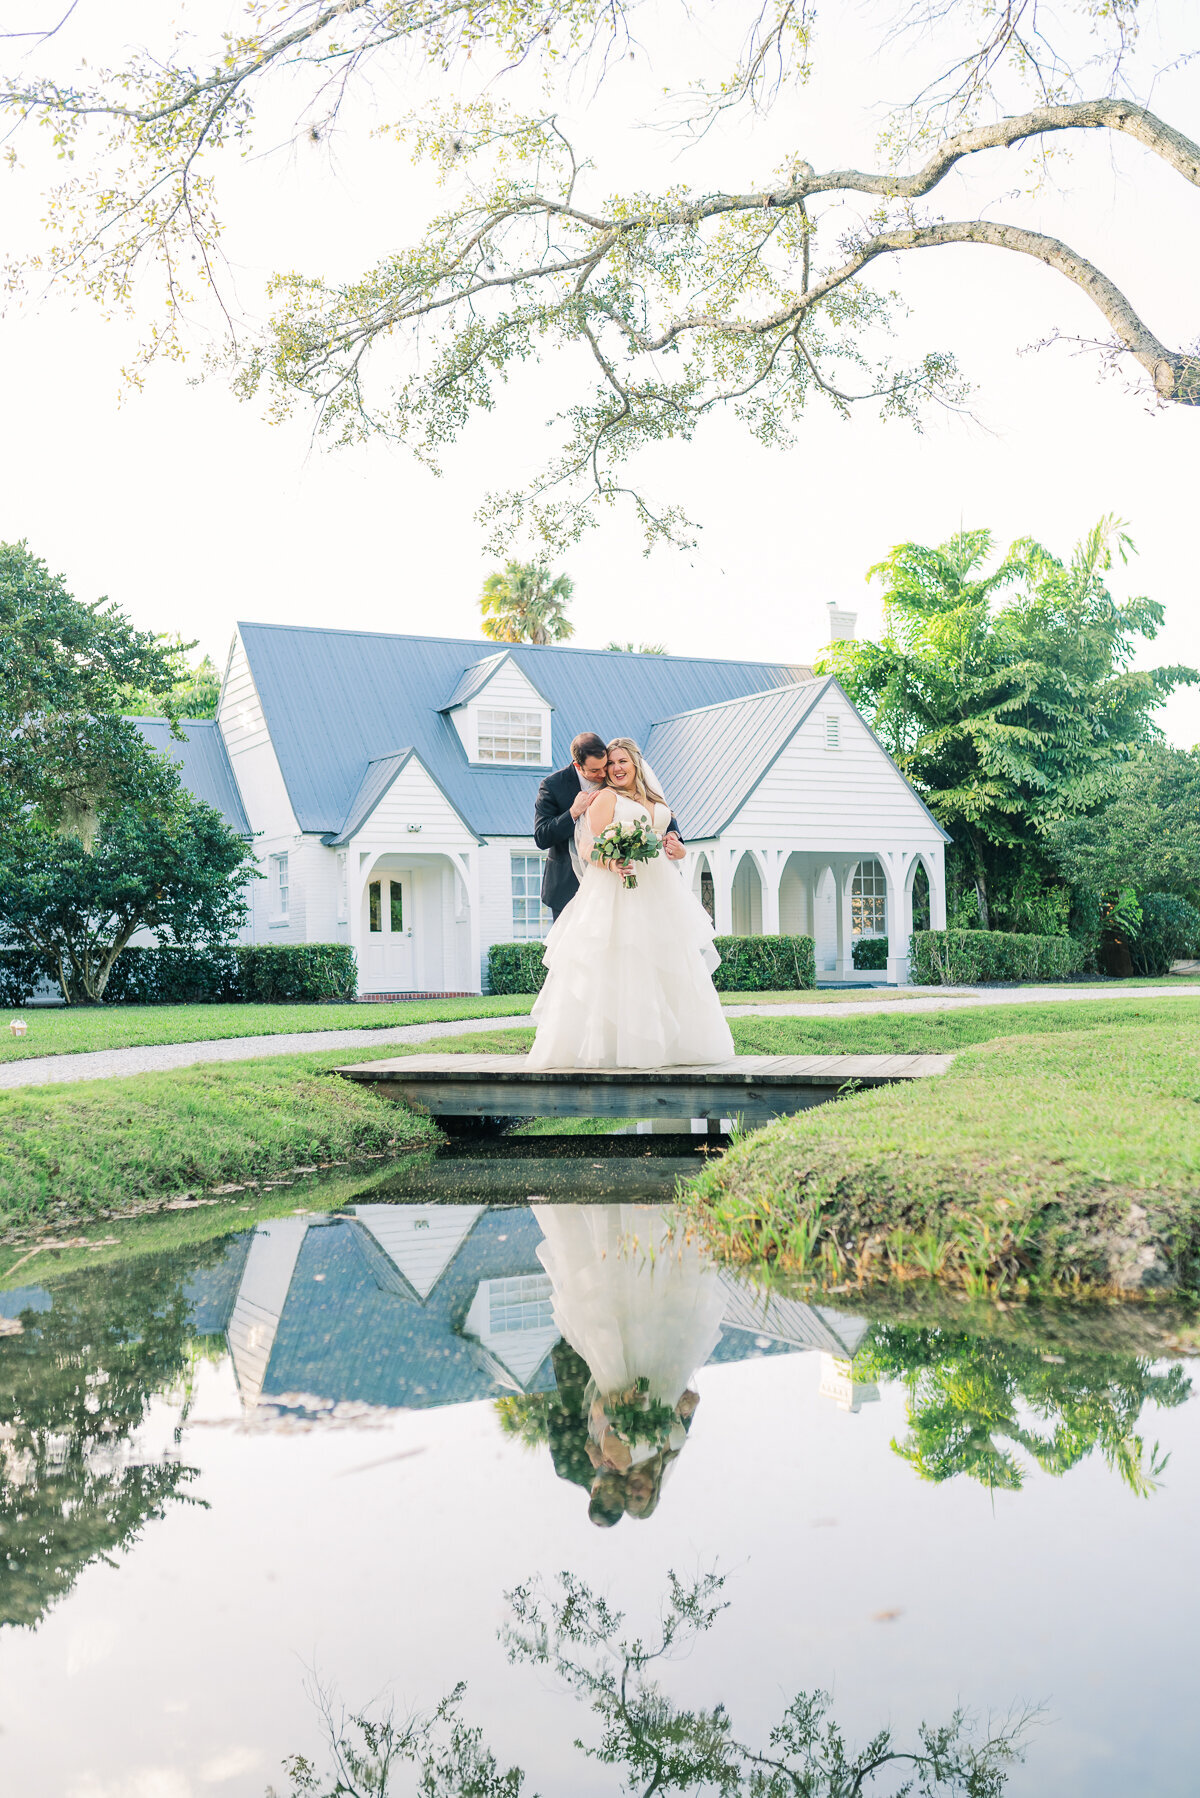 Taylor & Jeff The Lake House Wedding | Lisa Marshall Photography